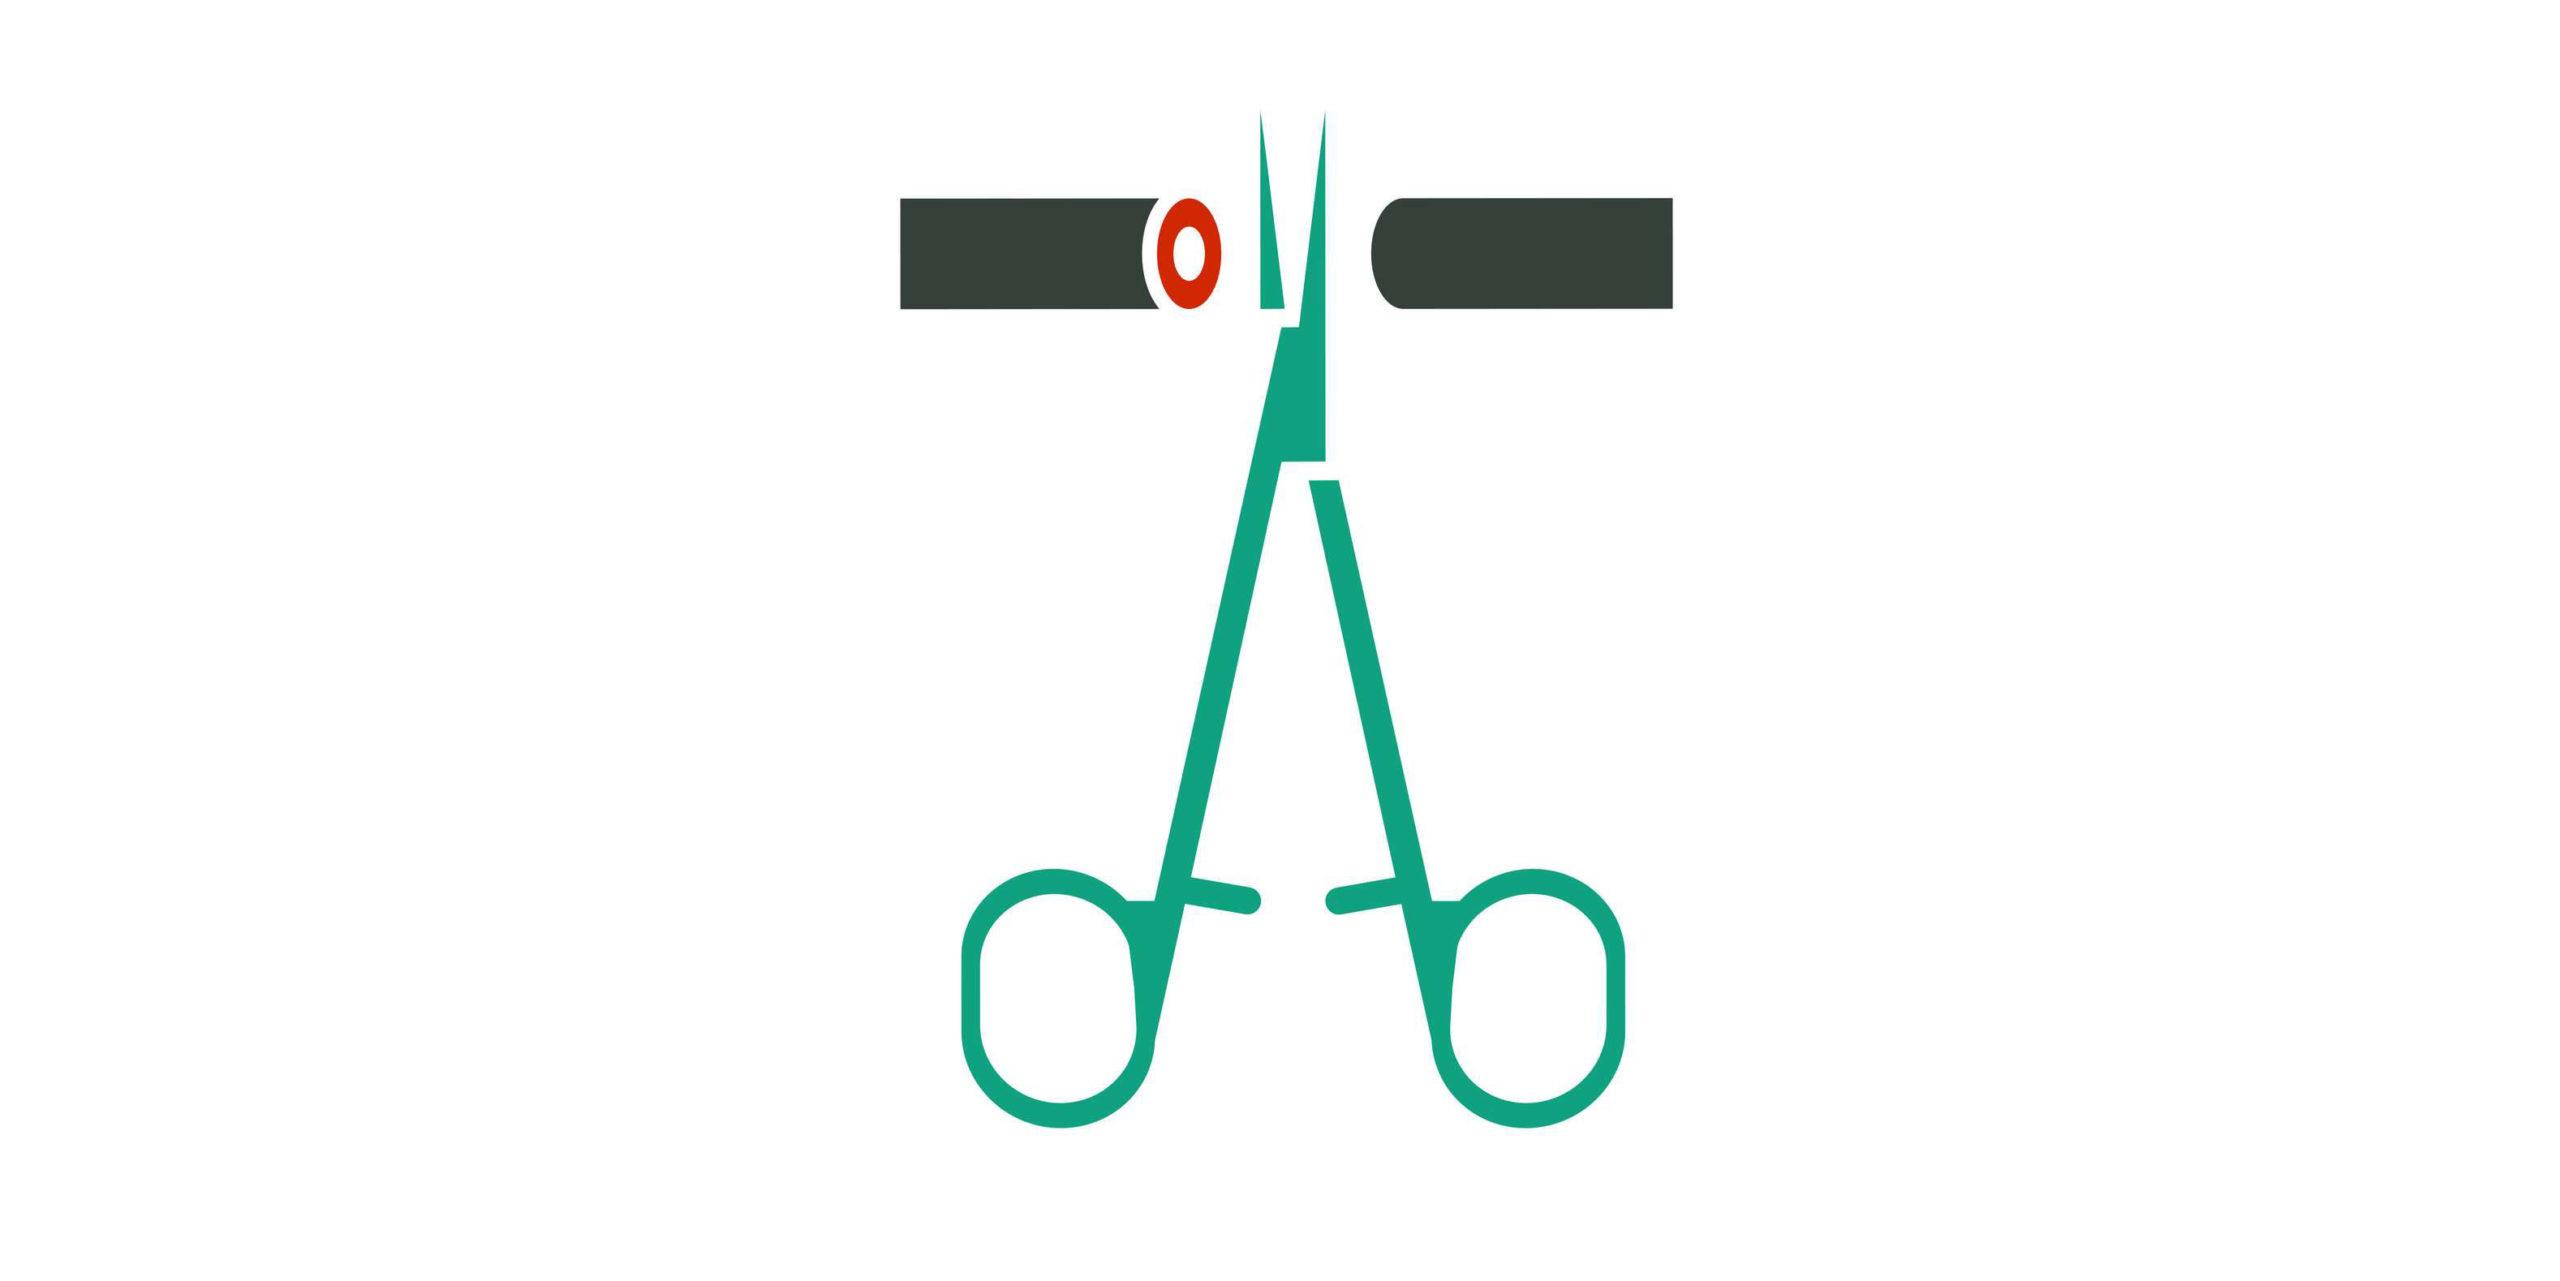 Mann-Empfängnisverhütung-Piktogramm. Vasektomie-Symbol in grünen medizinischen Farben. Vektorillustration im flachen Stil.